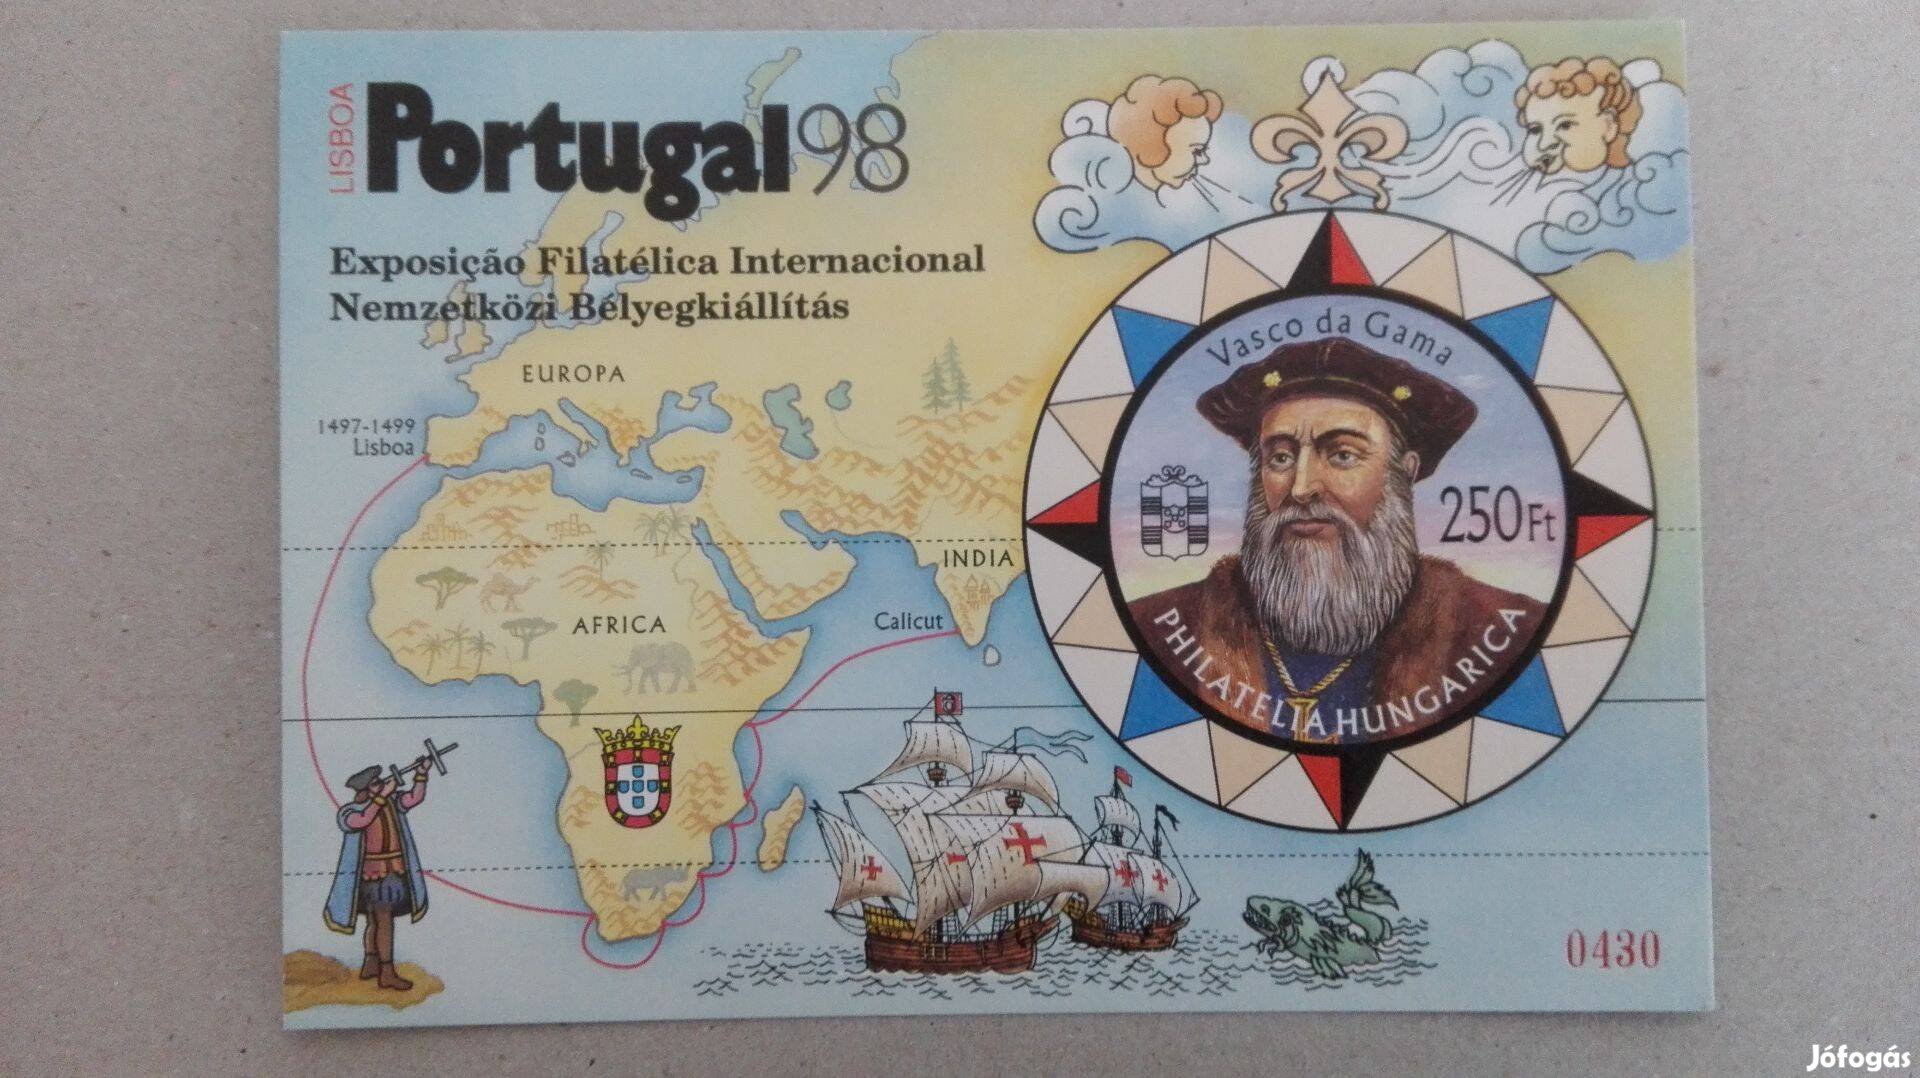 Ritka hátlapi felirattal"Portugal 98" Nemzetközi bélyegkiállítás rit